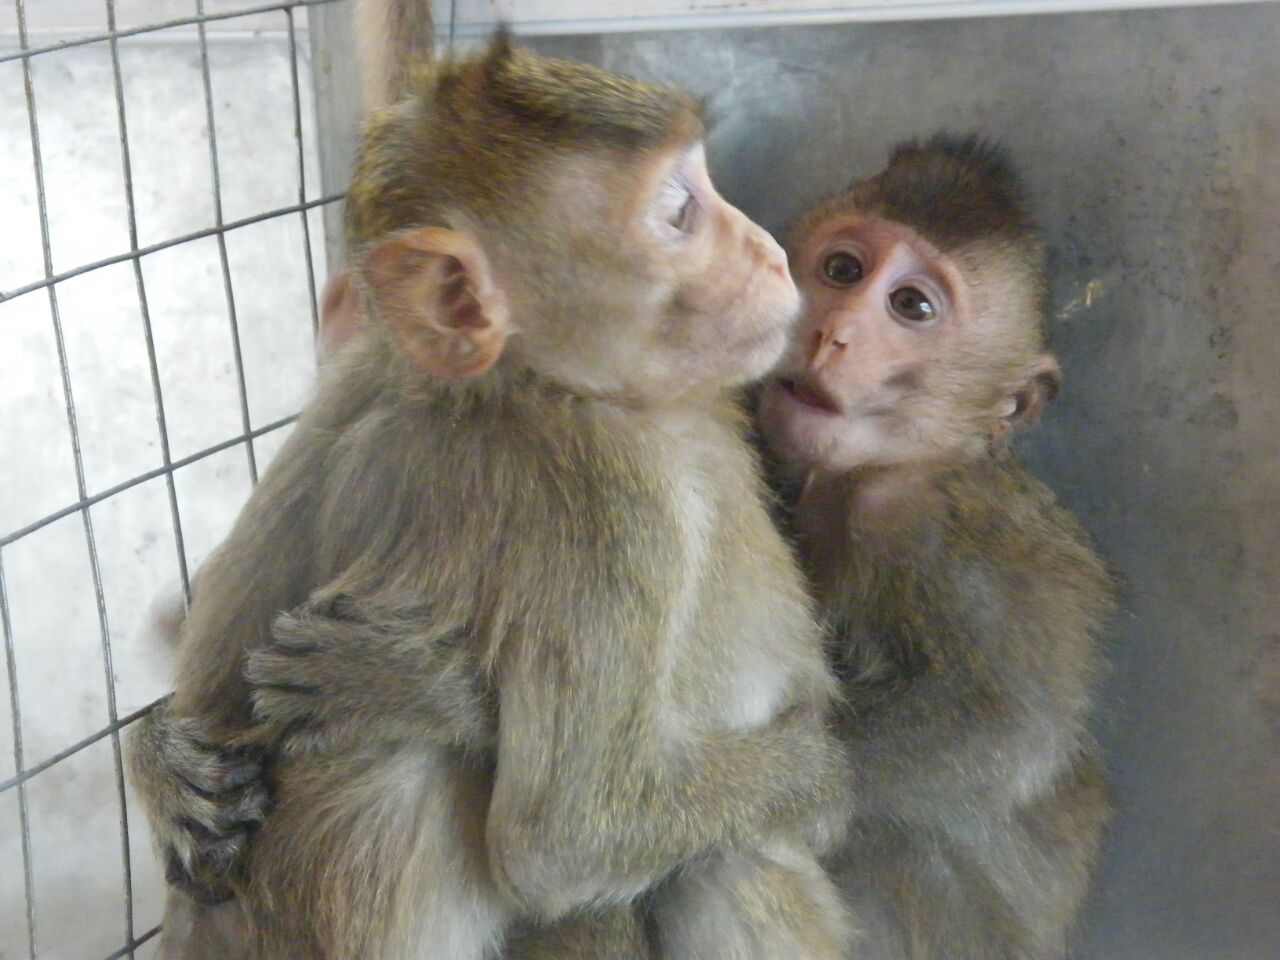  15 детенышей обезьян, изъятых на таможне в аэропорту Домодедово, отправлены в Центр передержки диких животных  - фото 1